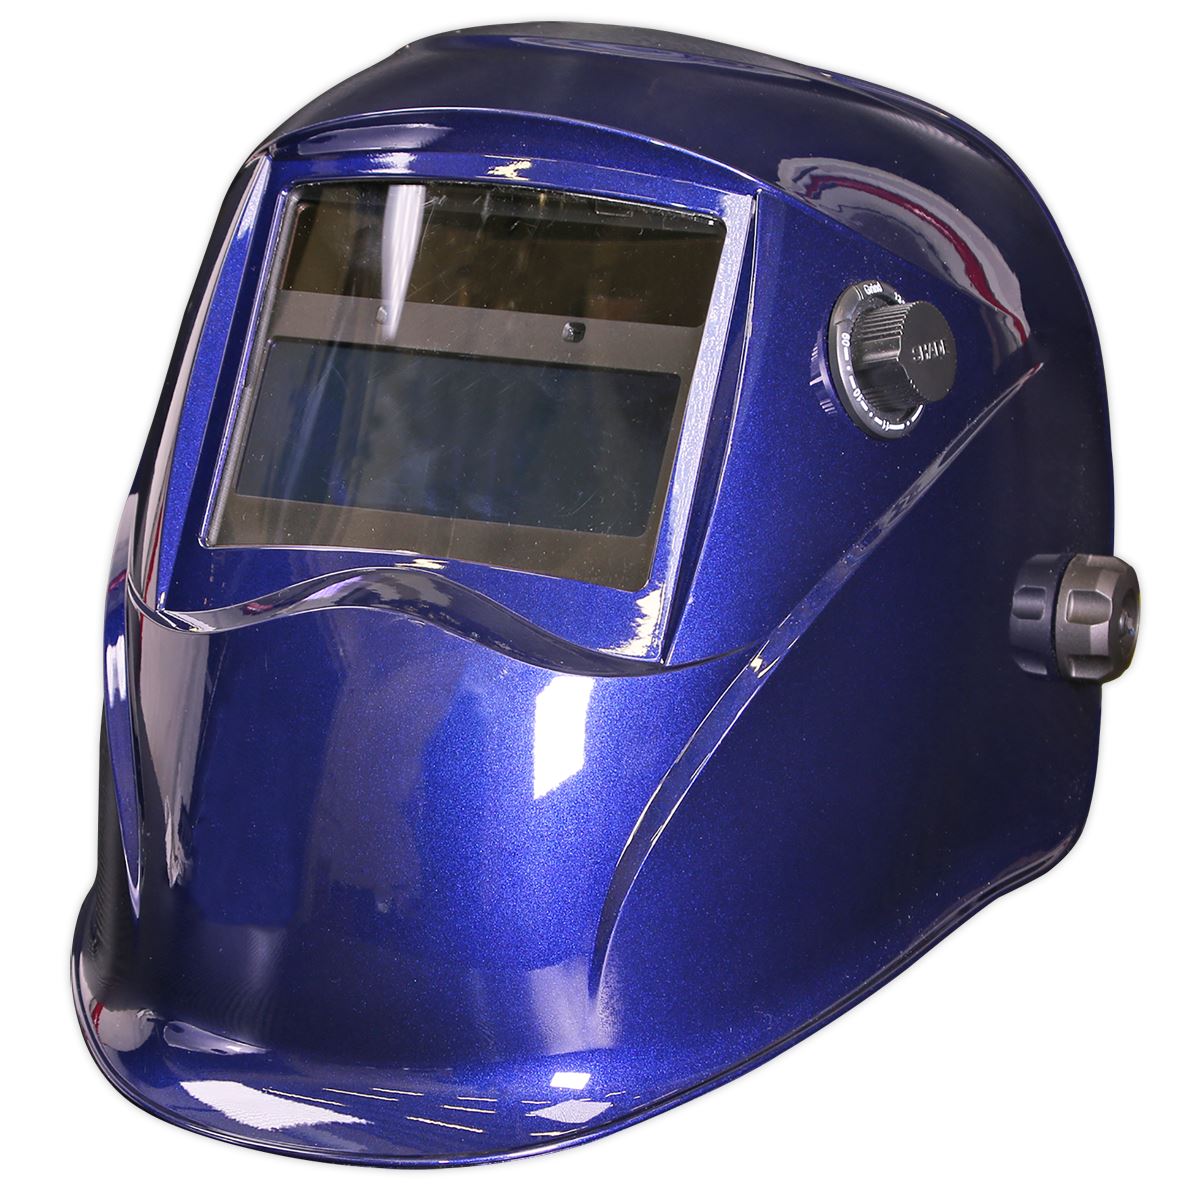 Sealey Welding Helmet Auto Darkening - Shade 9-13 - Blue